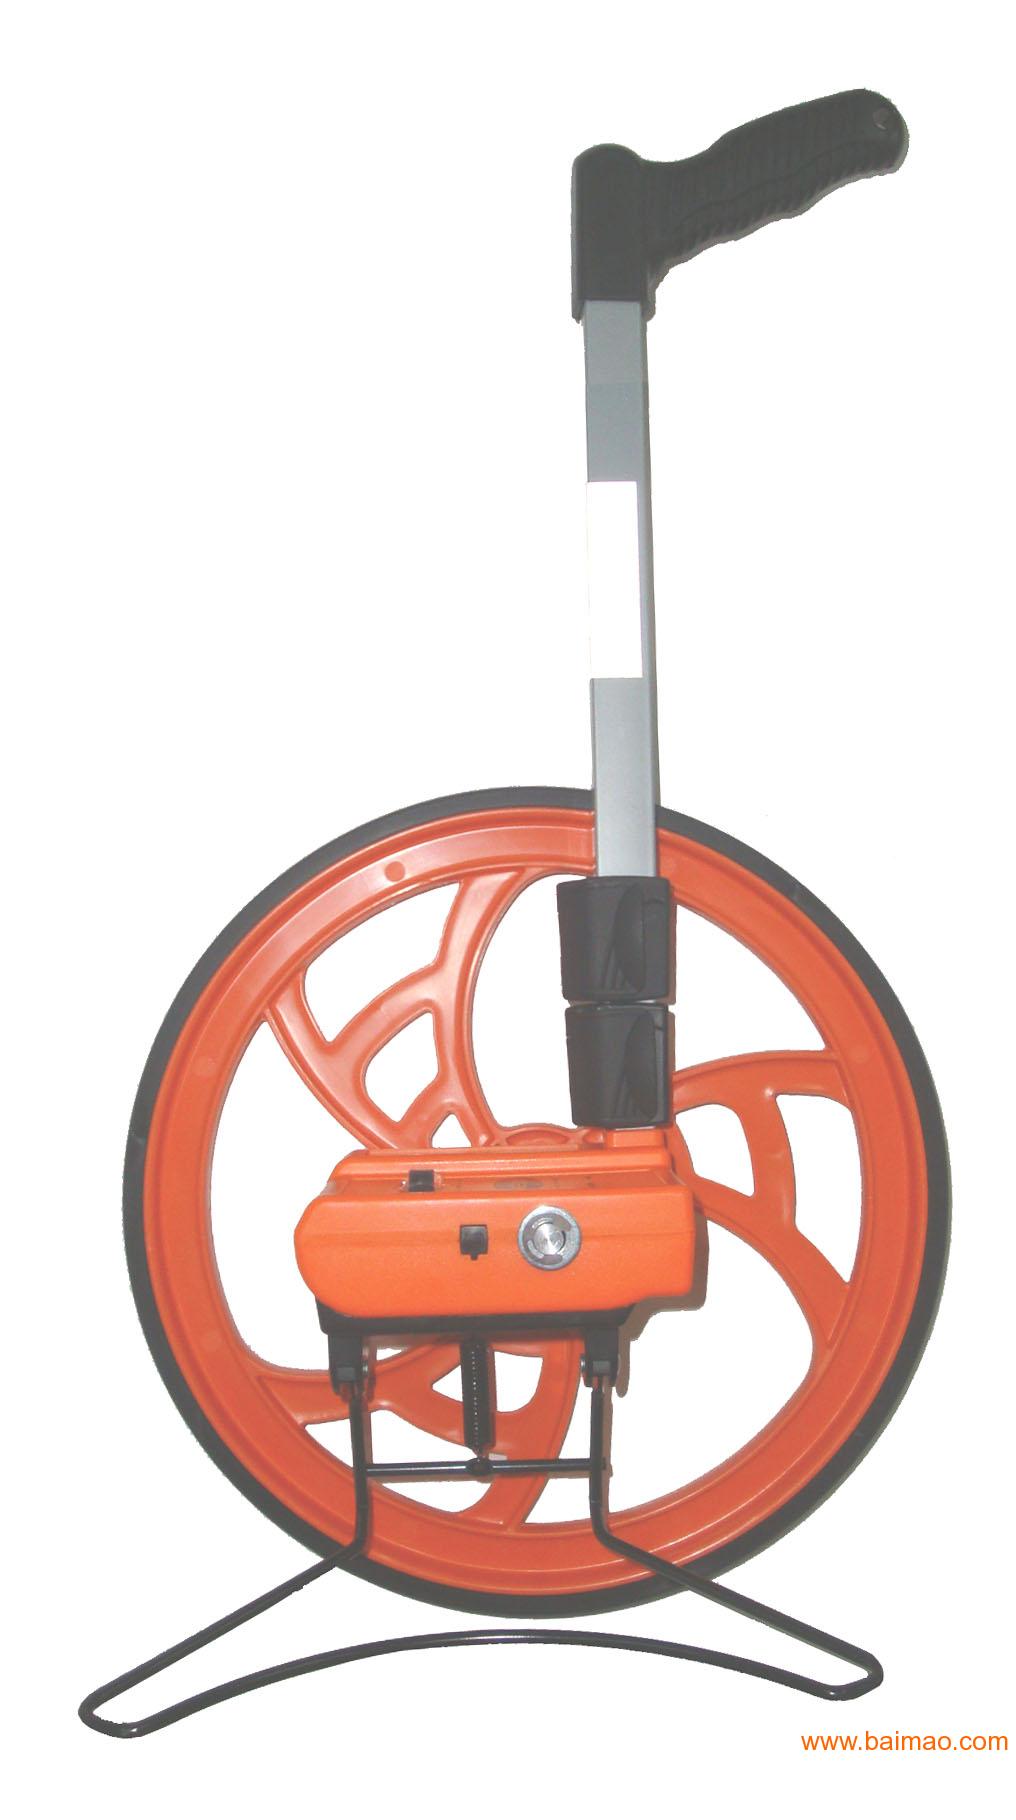 进口测量轮/计数器/测距轮/大轮尺采用进口材料